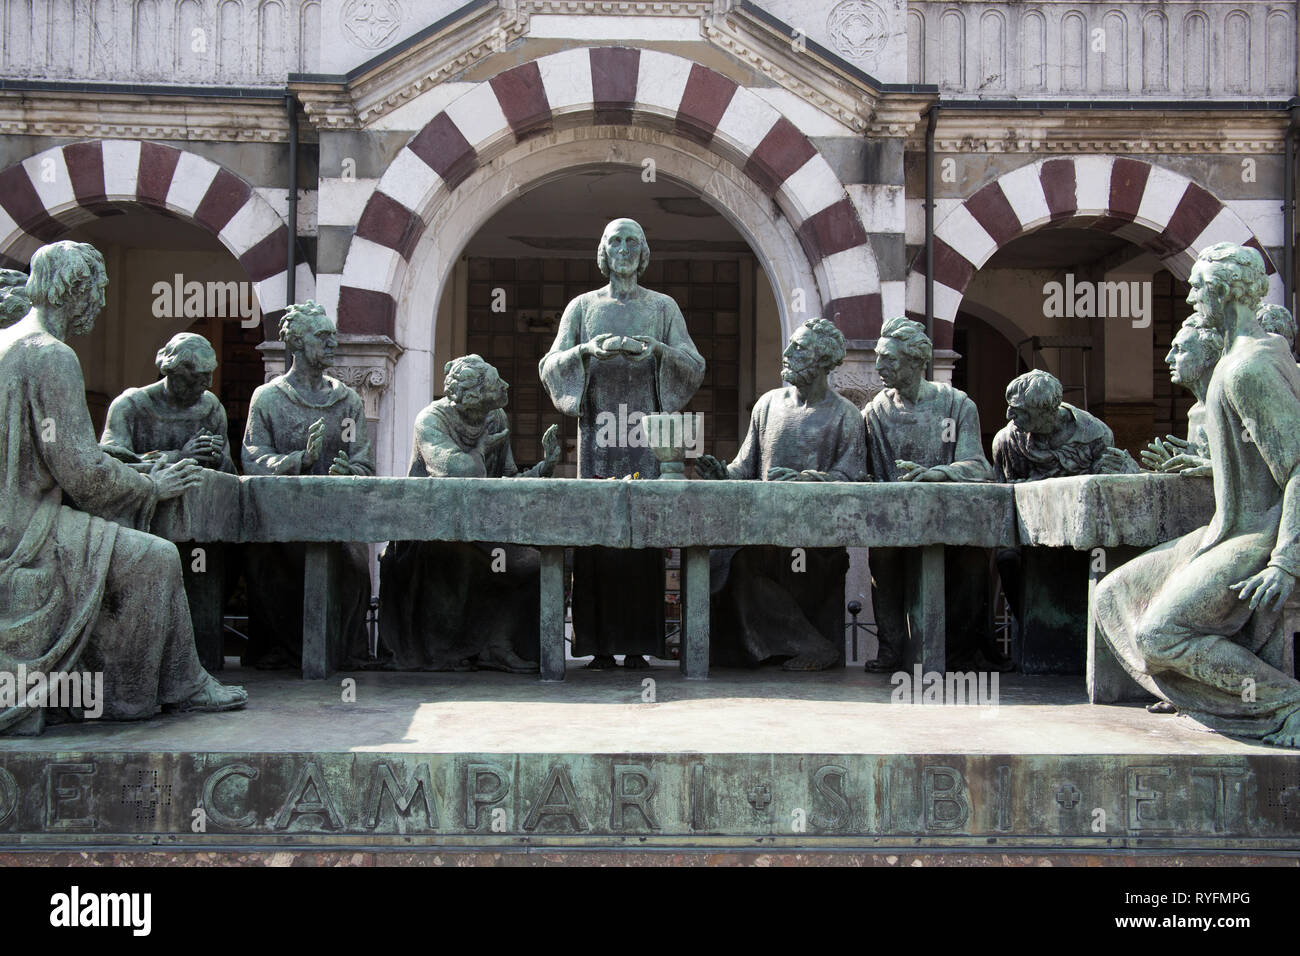 La dernière cène sur la tombe familiale Campari - statue / monument pierres tombales dans le Cimitero Monumentale di Milano - Cimetière Monumental - Milan Italie Banque D'Images